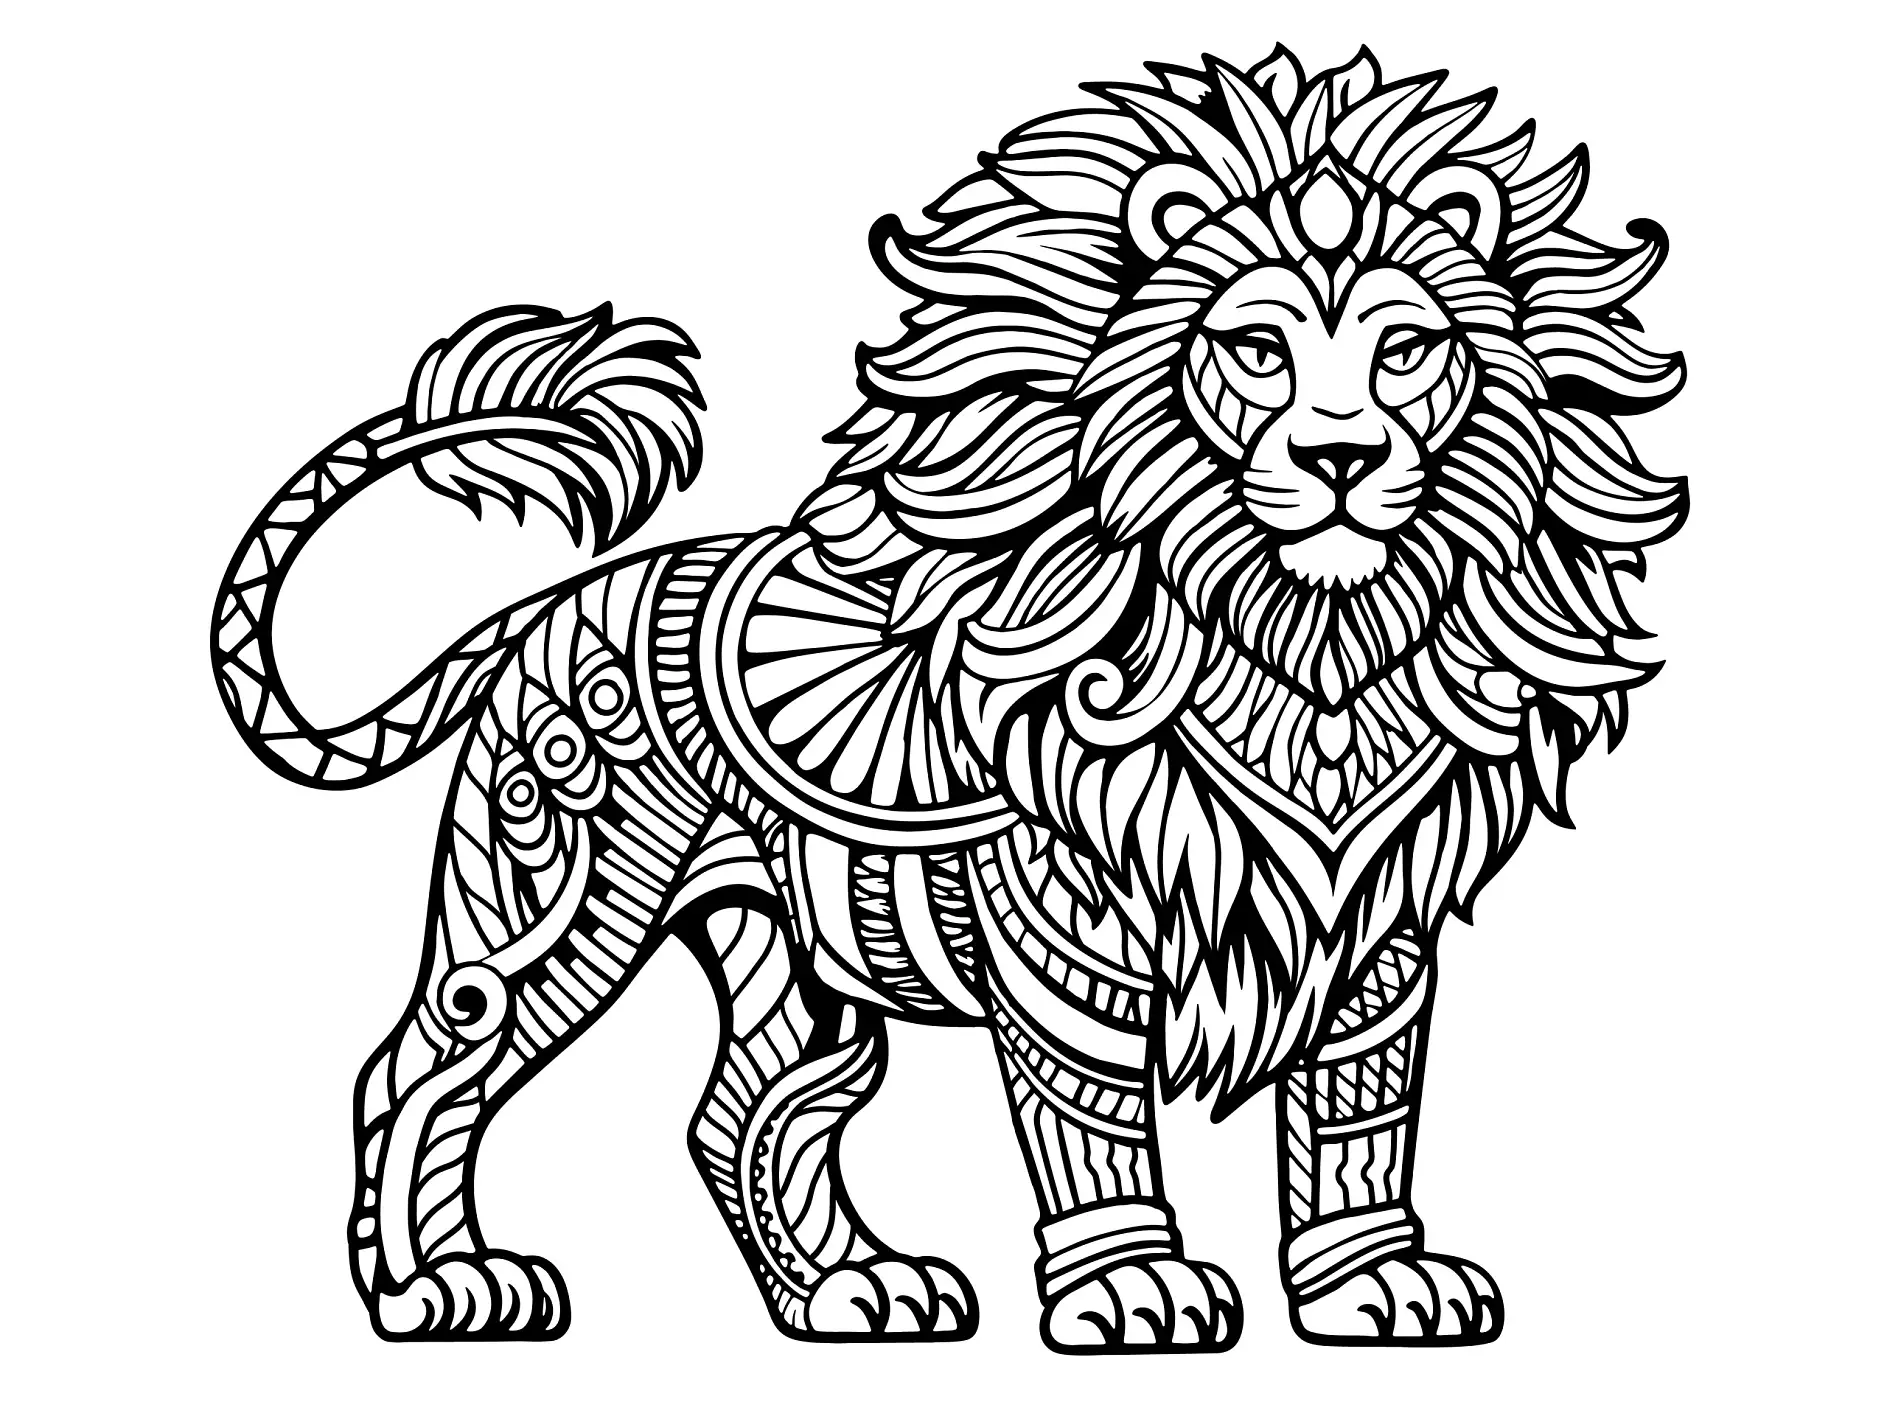 Ausmalbild Mandala mit Löwe und detailreichen Mustern und ornamentalen Verzierungen